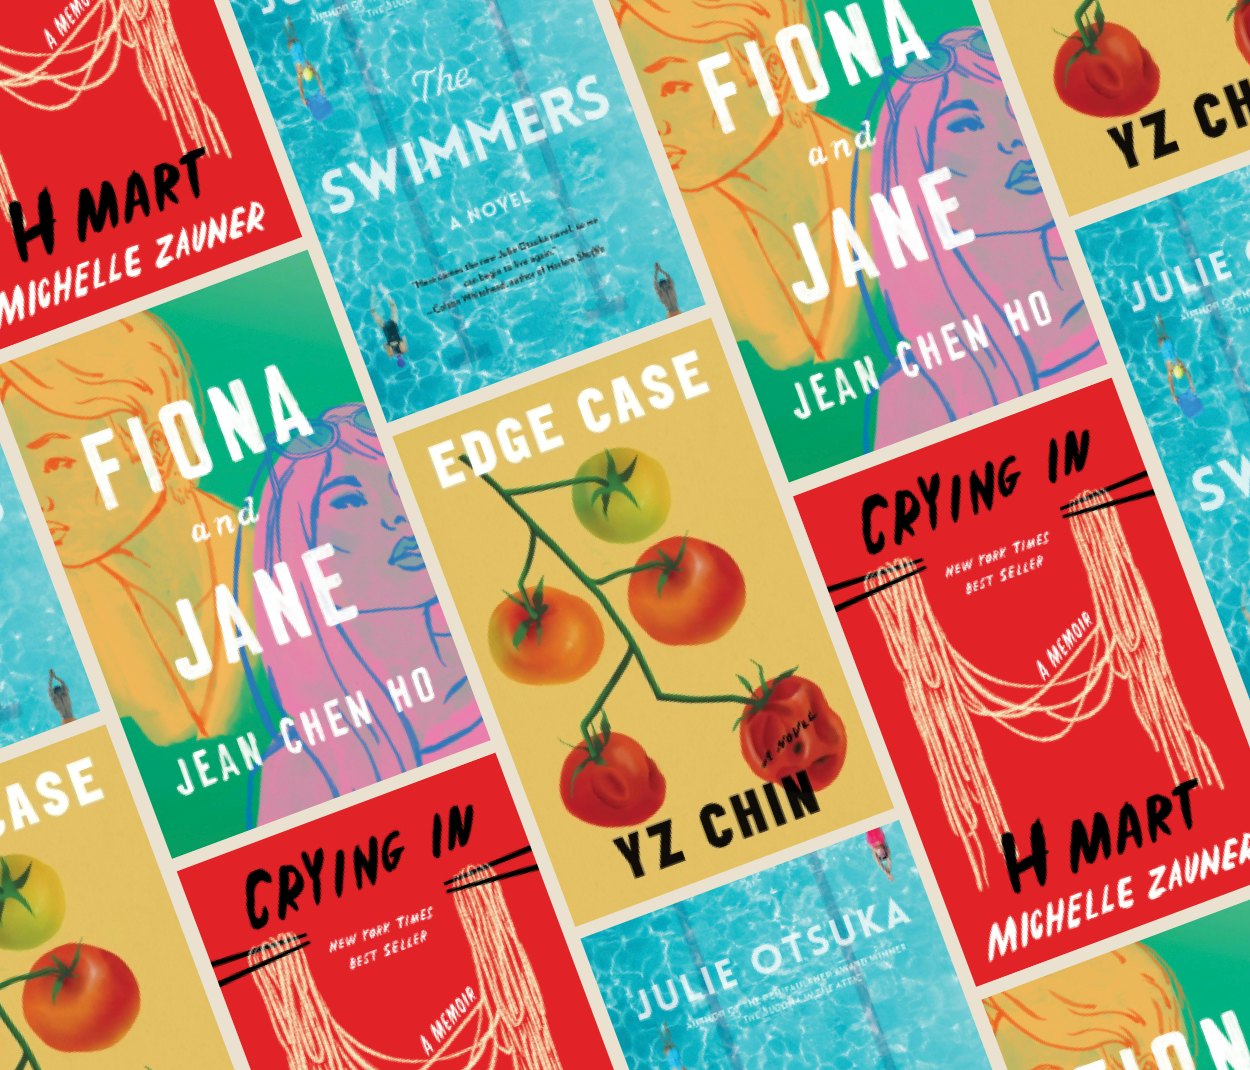 Penguin Classics Reprints 4 Classic Asian American Novels : NPR